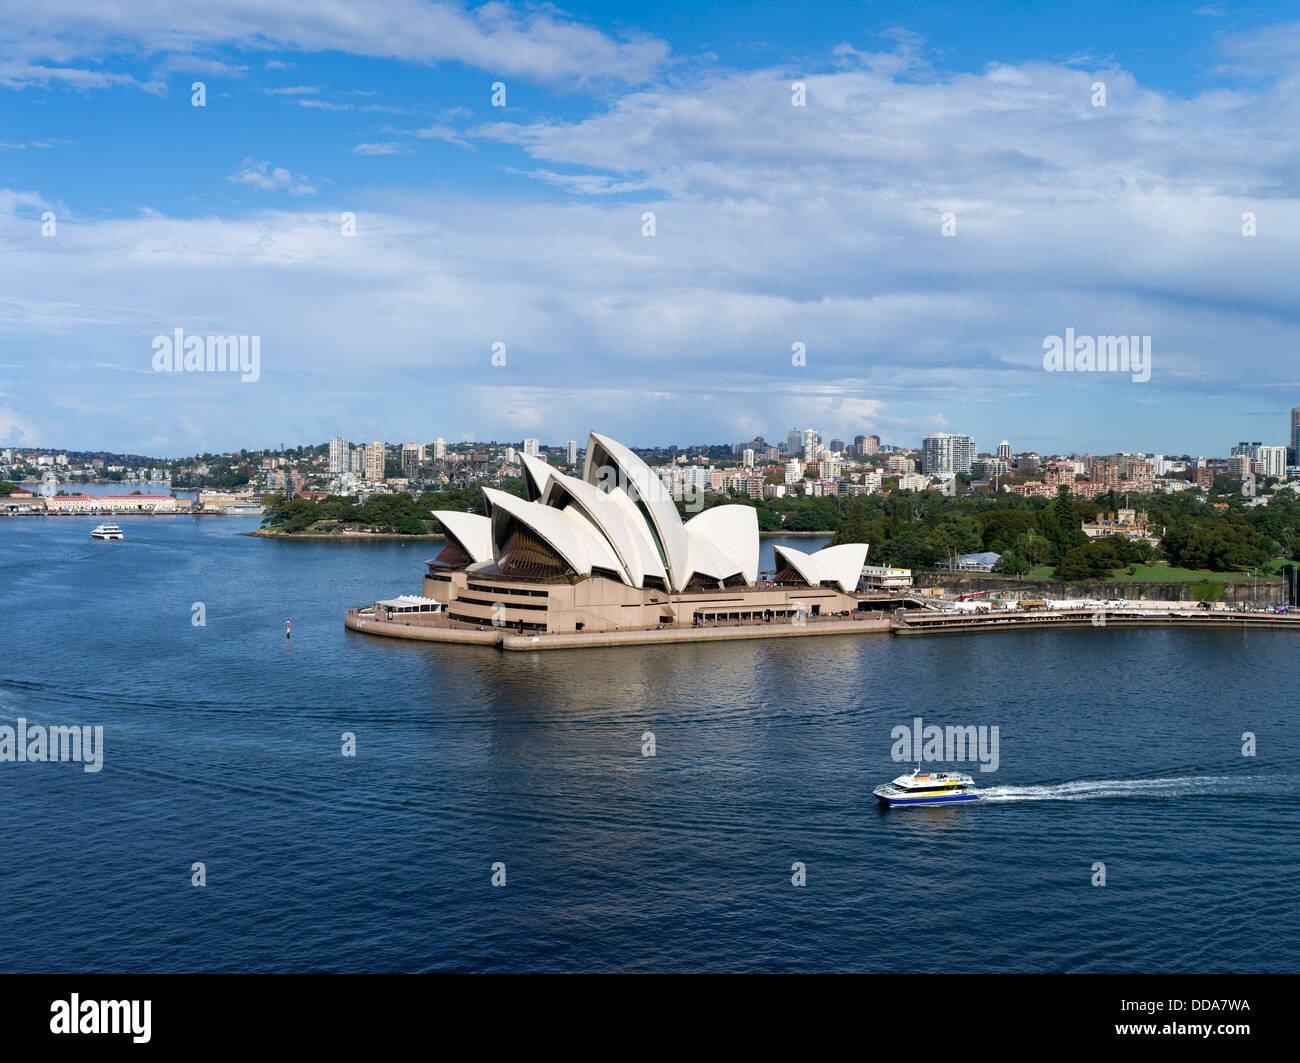 dh Sydney Harbour SYDNEY AUSTRALIA Manly seacat catamarano veloce per traghetti Traghetto aereo del porto dell'Opera House di Sydney Foto Stock